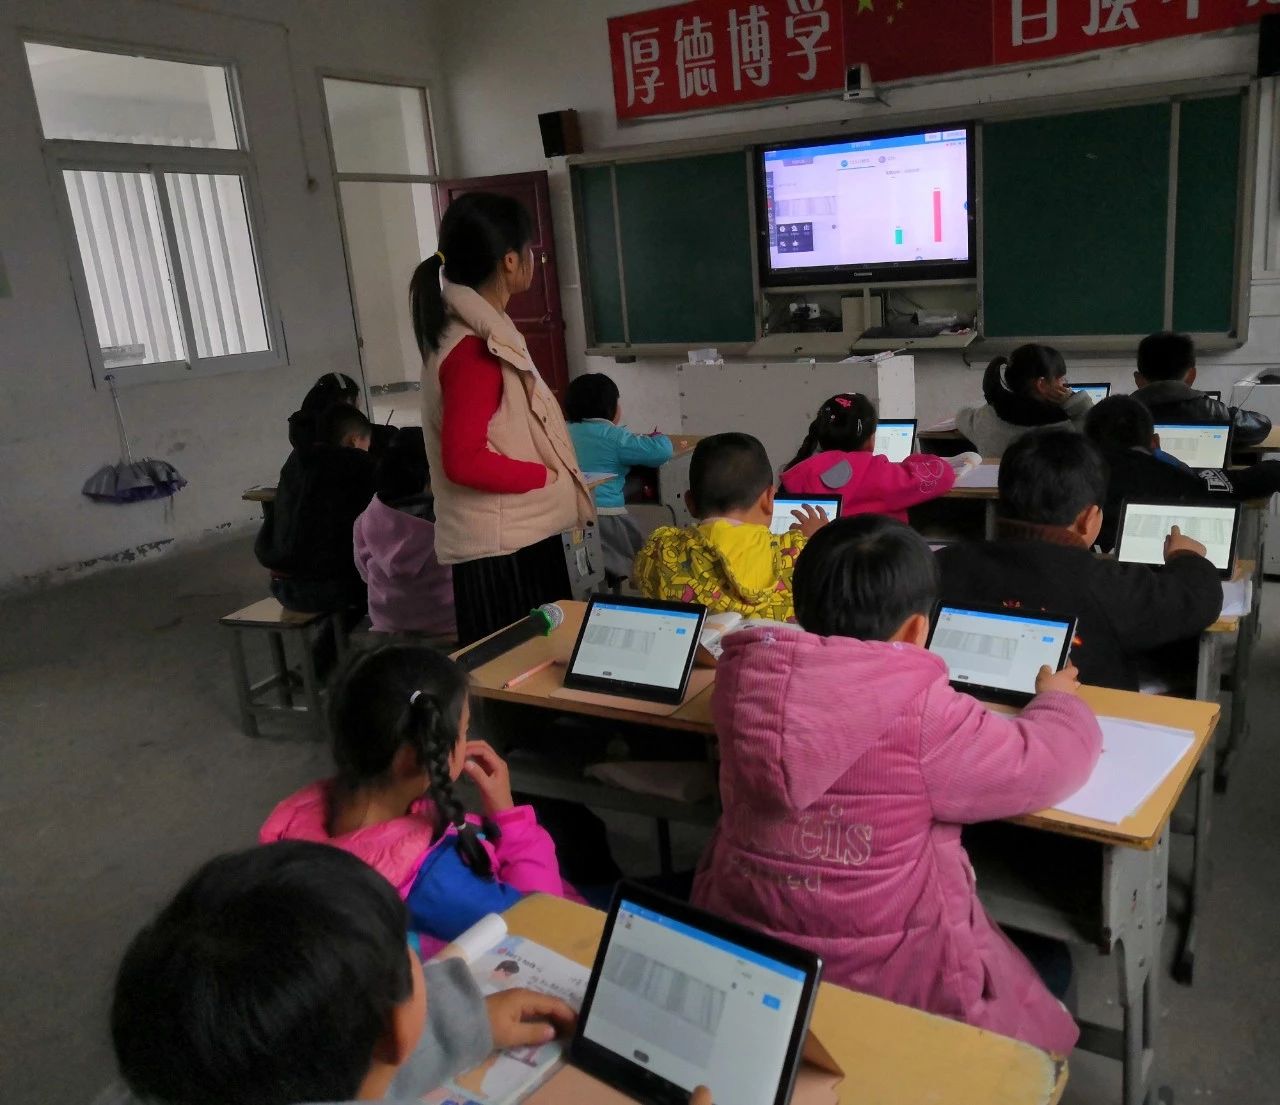 安徽：“在线课堂”拉近城乡距离 教育信息化促教育公平